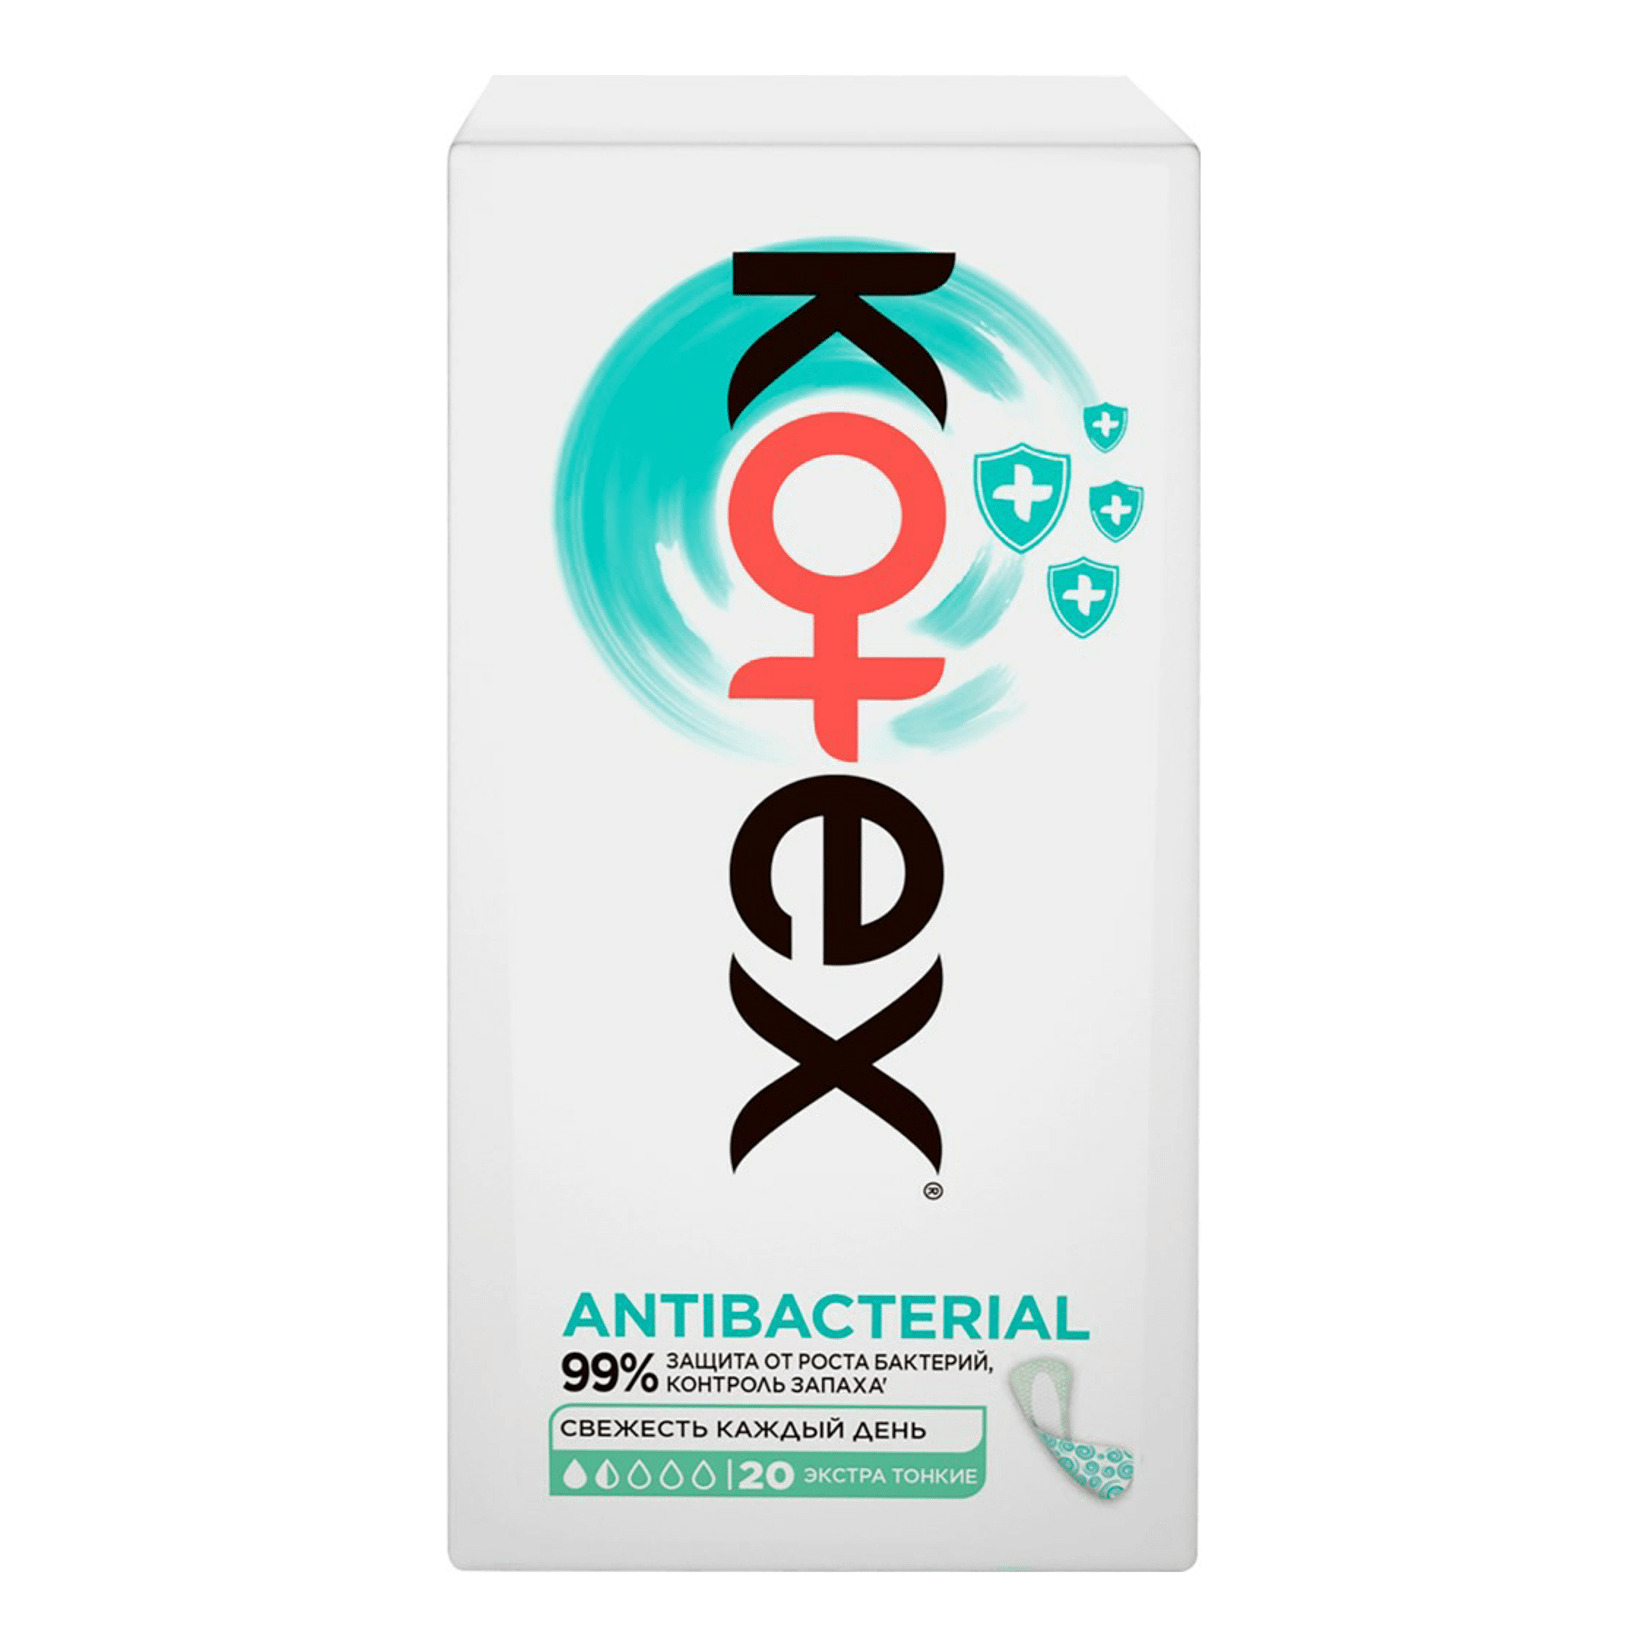 kotex antibacterial прокладки ежедневные экстра тонкие 20 шт Kotex Antibacterial, прокладки ежедневные экстра тонкие, 20 шт.